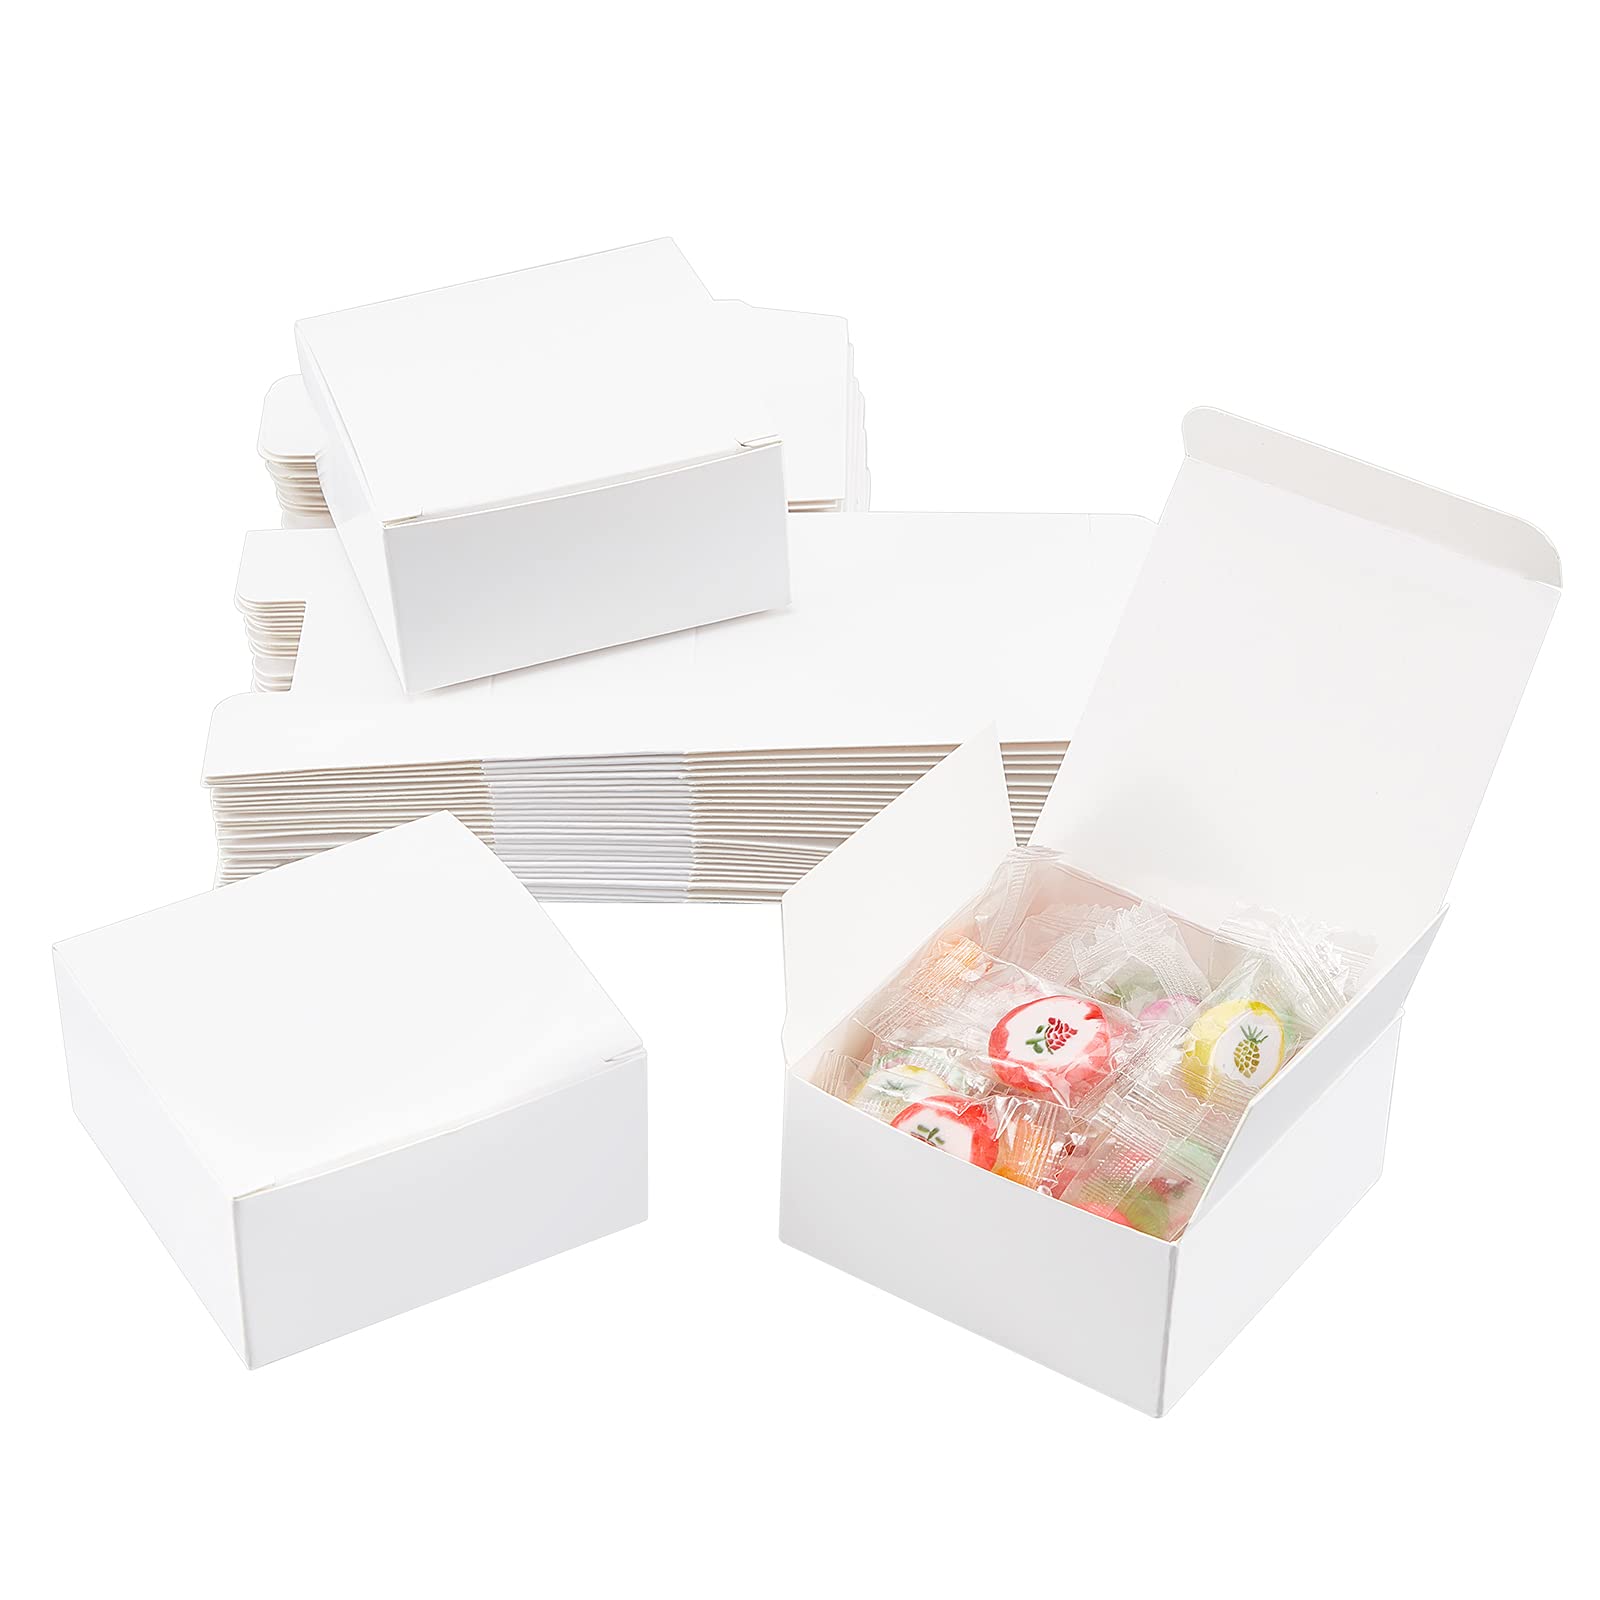 PH PandaHall 箱 ラッピング 無地 ミニギフトボックス 折り畳み 白 ギフトボックス 折り畳み ギフト ボックス 30個セット クラフト 小さいギフトボックス 折り畳み ラッピング ボックス 紙製 キャンディー お菓子 小物入れ